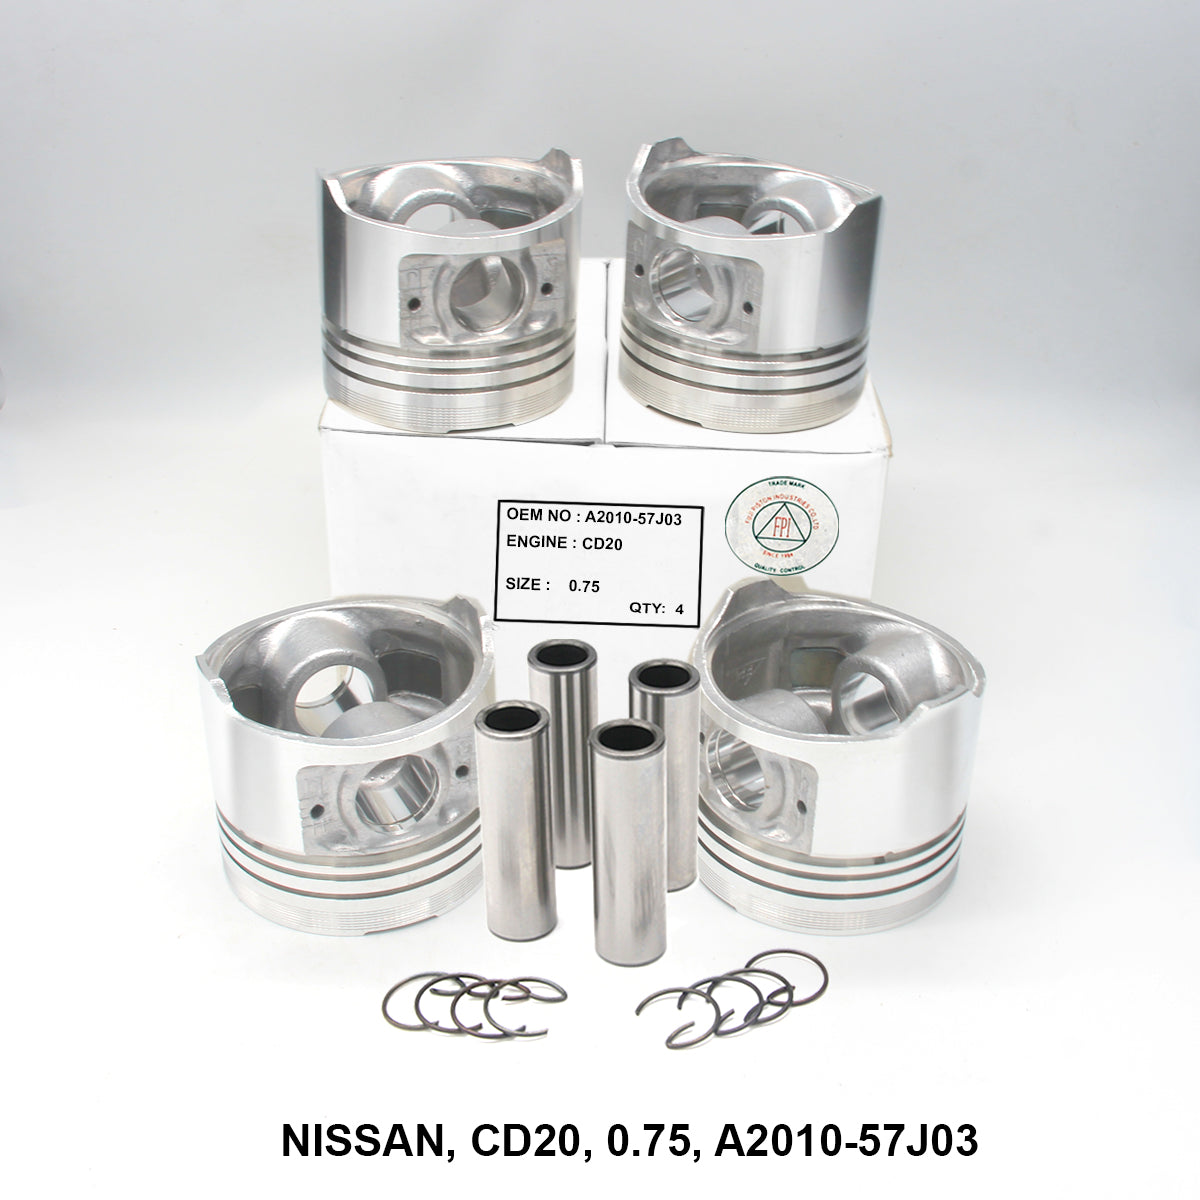 Piston W/Pin, FPI, CD20, 0.75, A2010-57J03 (001653)